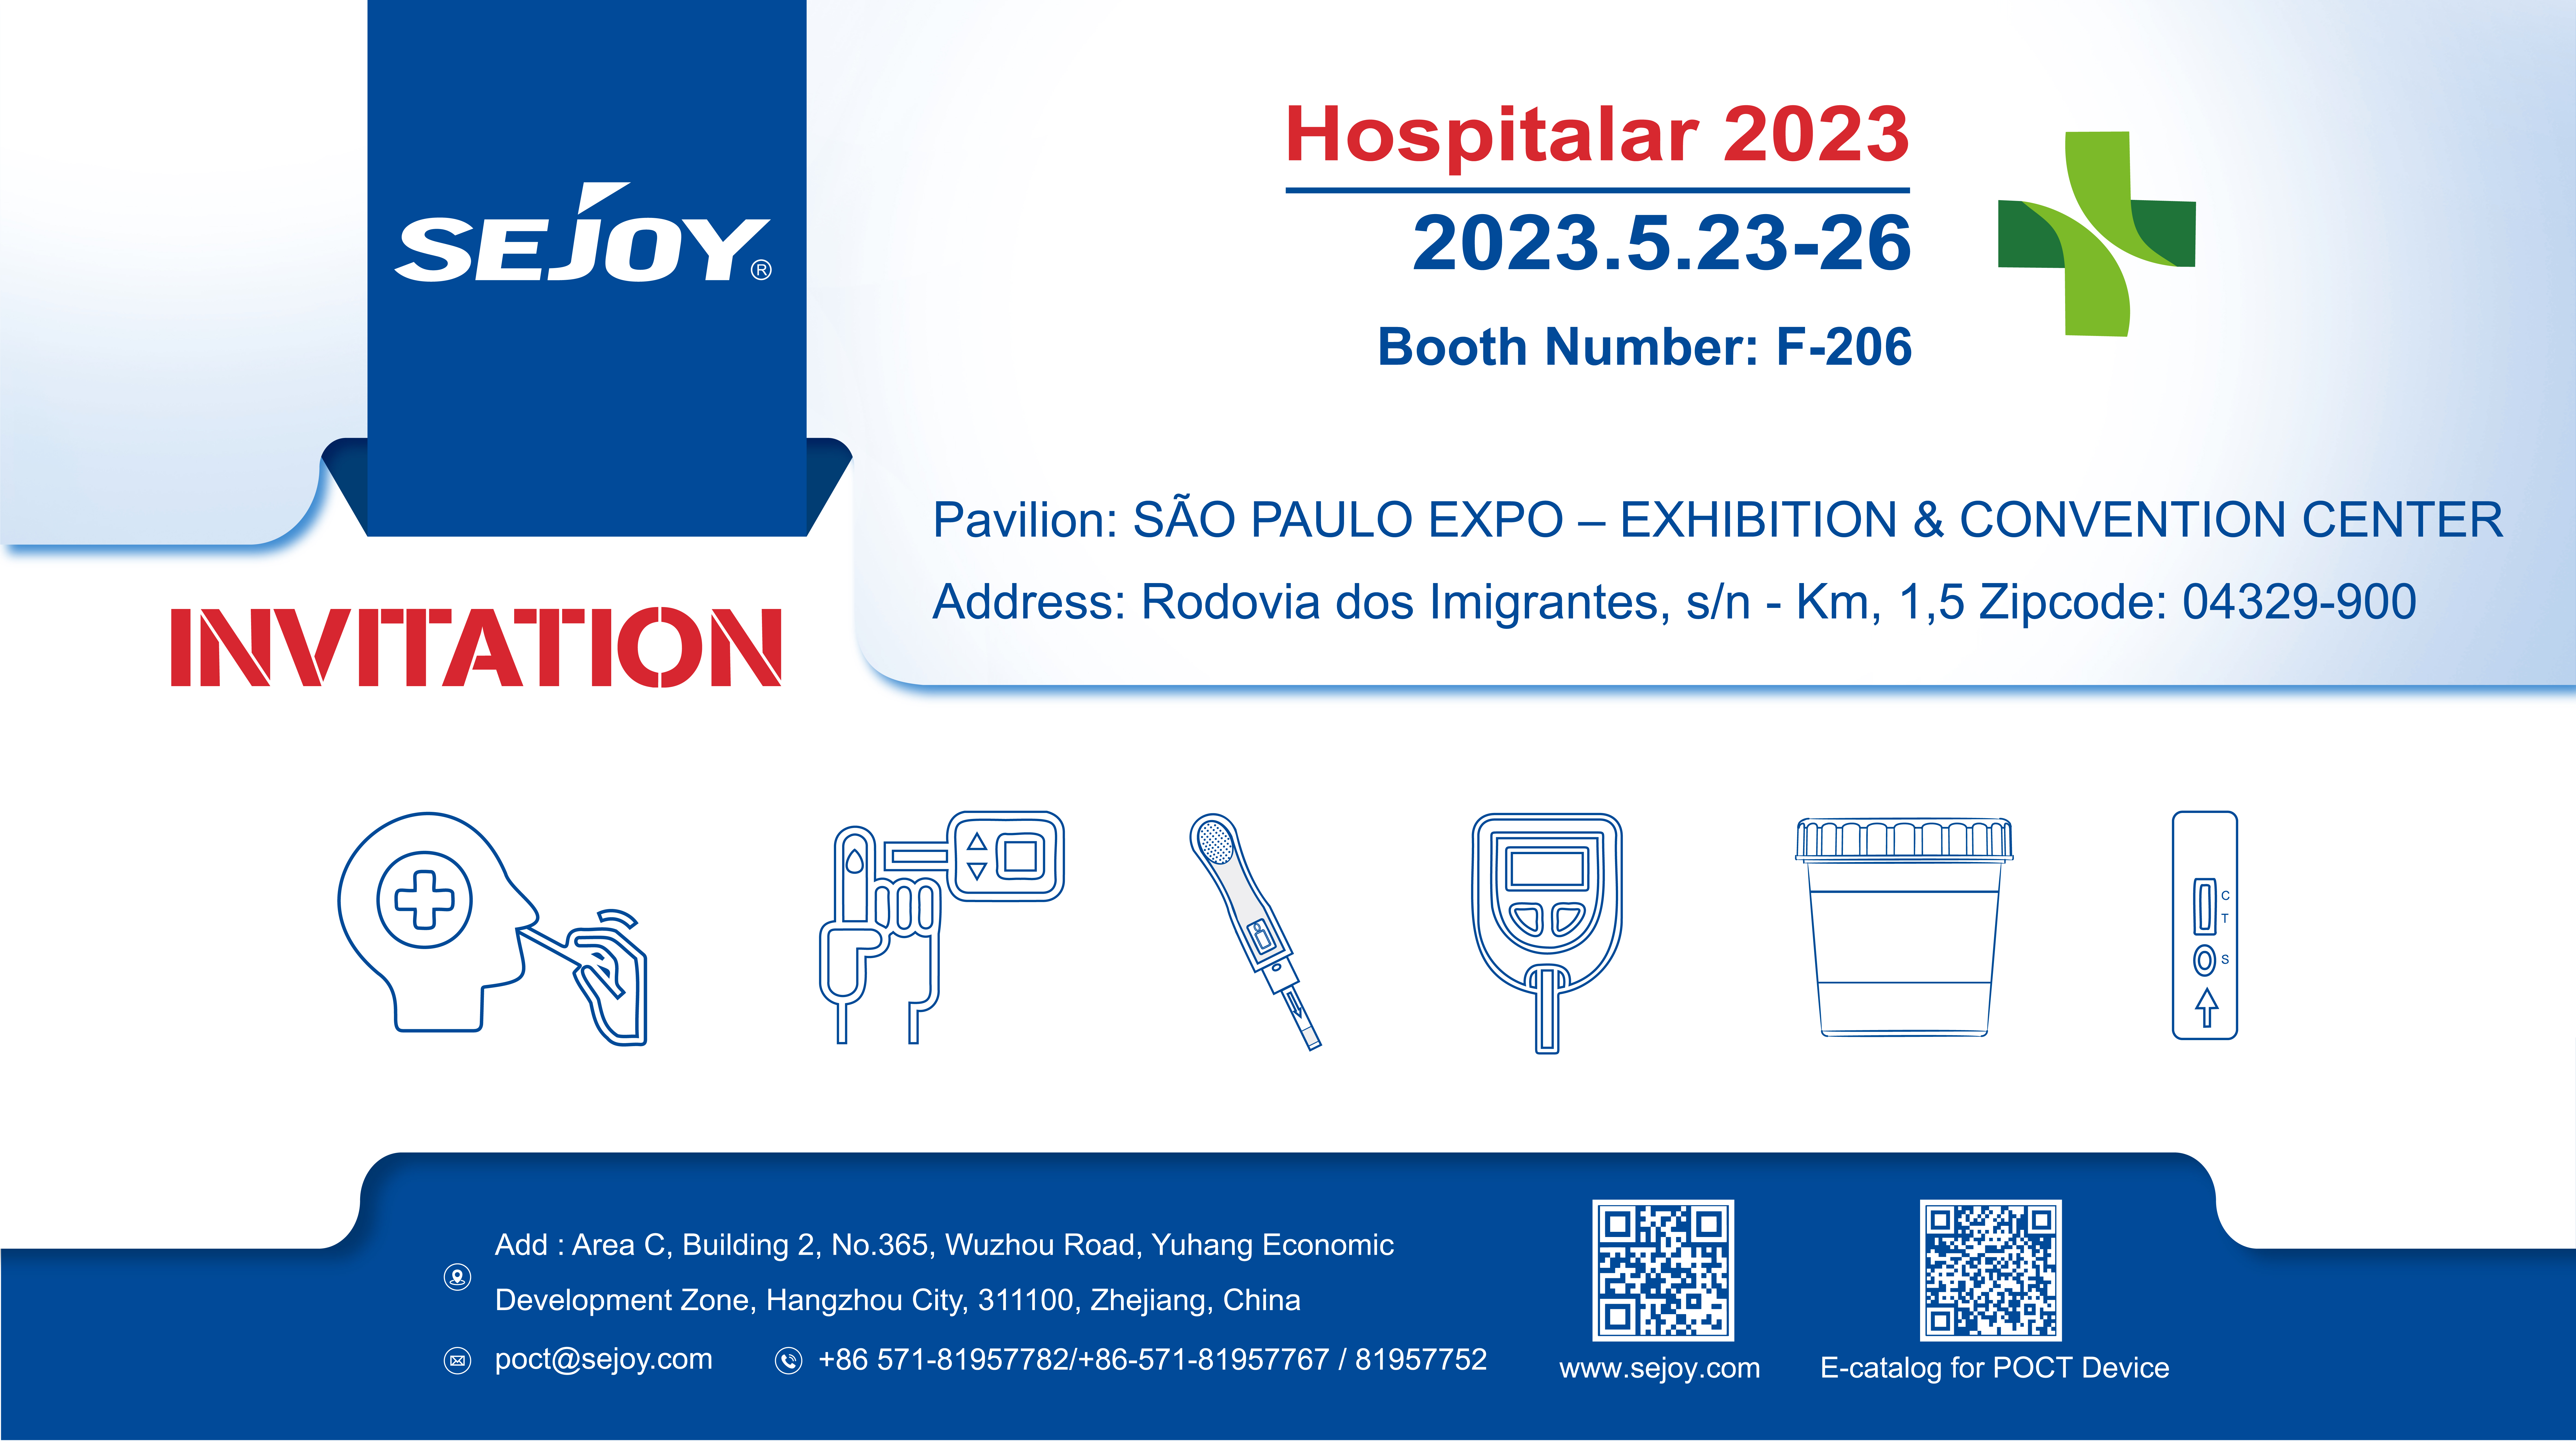 Hospitalar 2023 SEJOY LOOK FORWARD TO SEEING YOU!